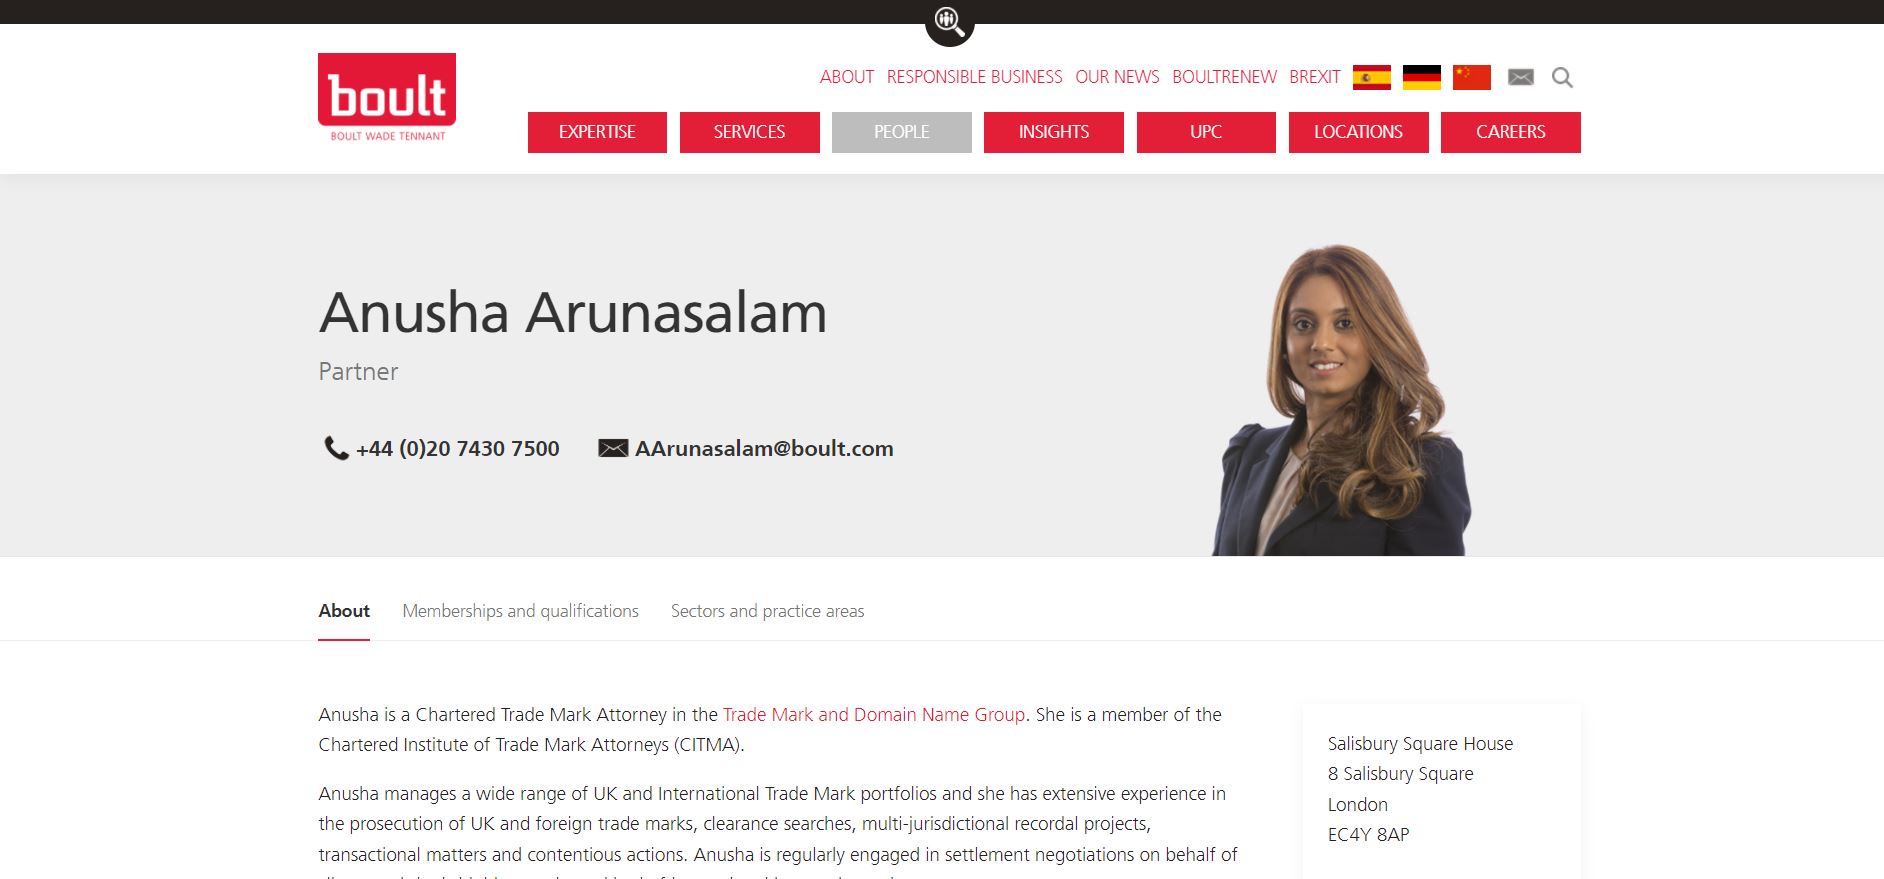 Anusha Arunasalam